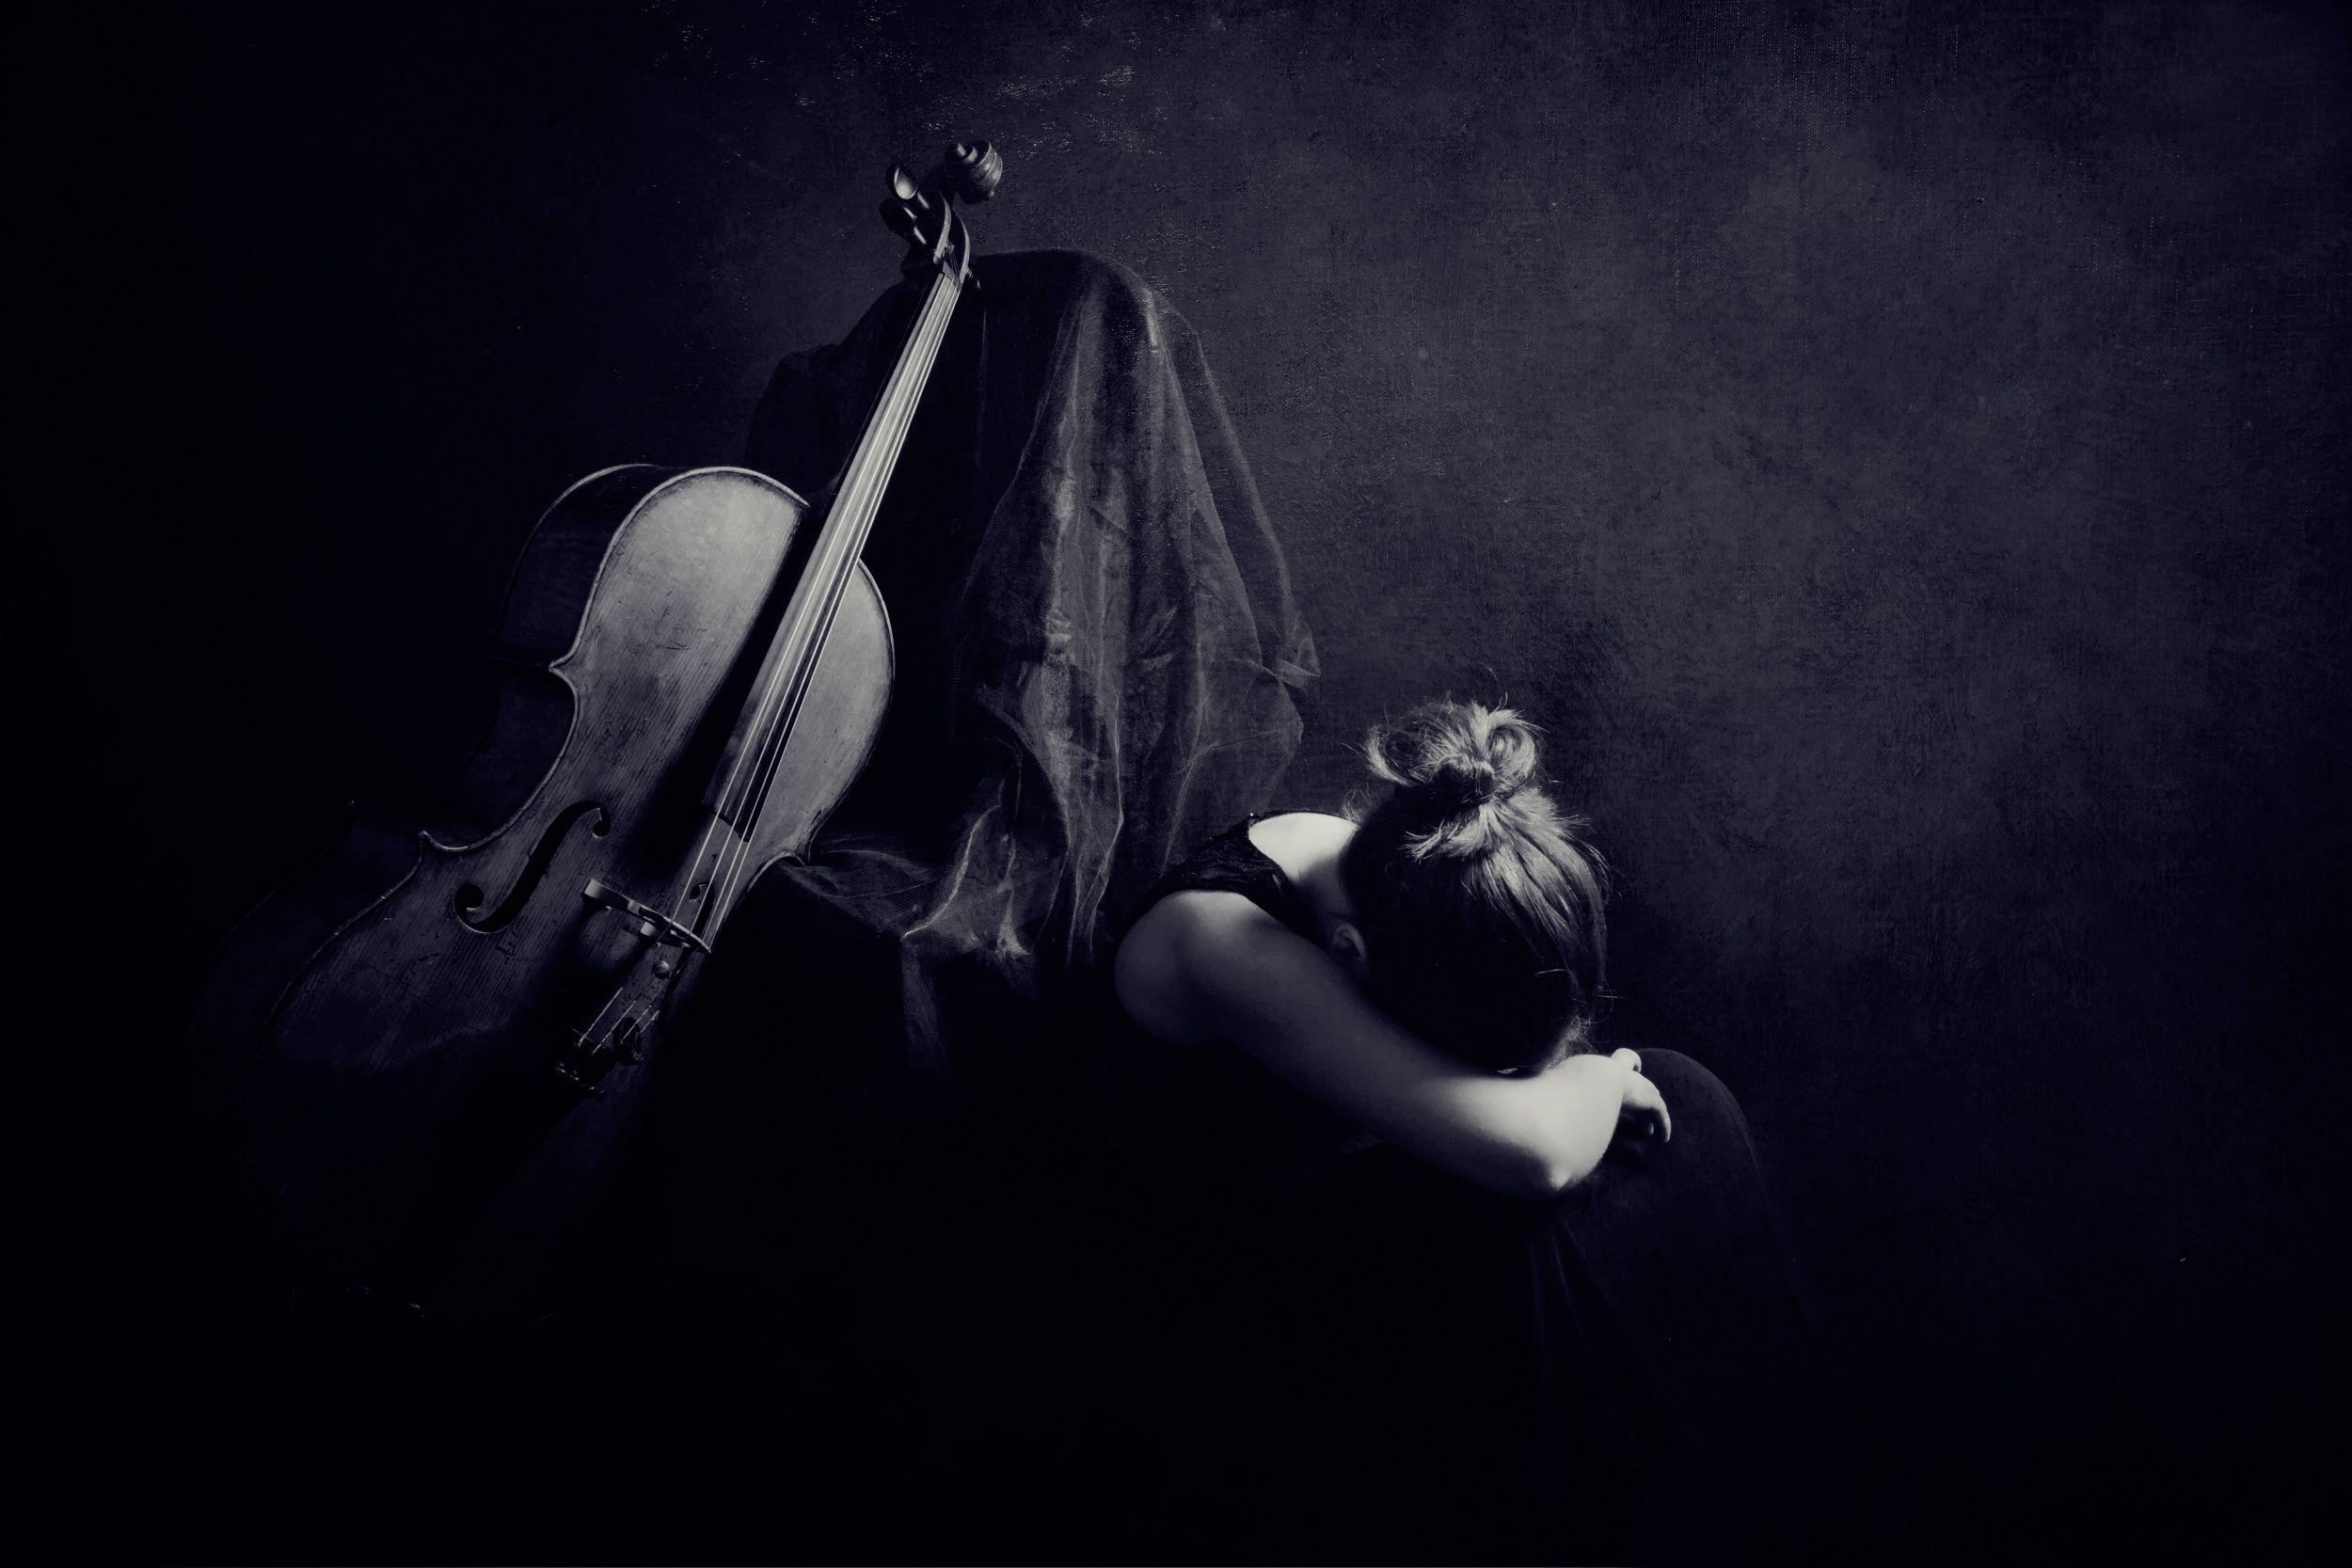 Sad music Cello wallpaper and image, picture, photo